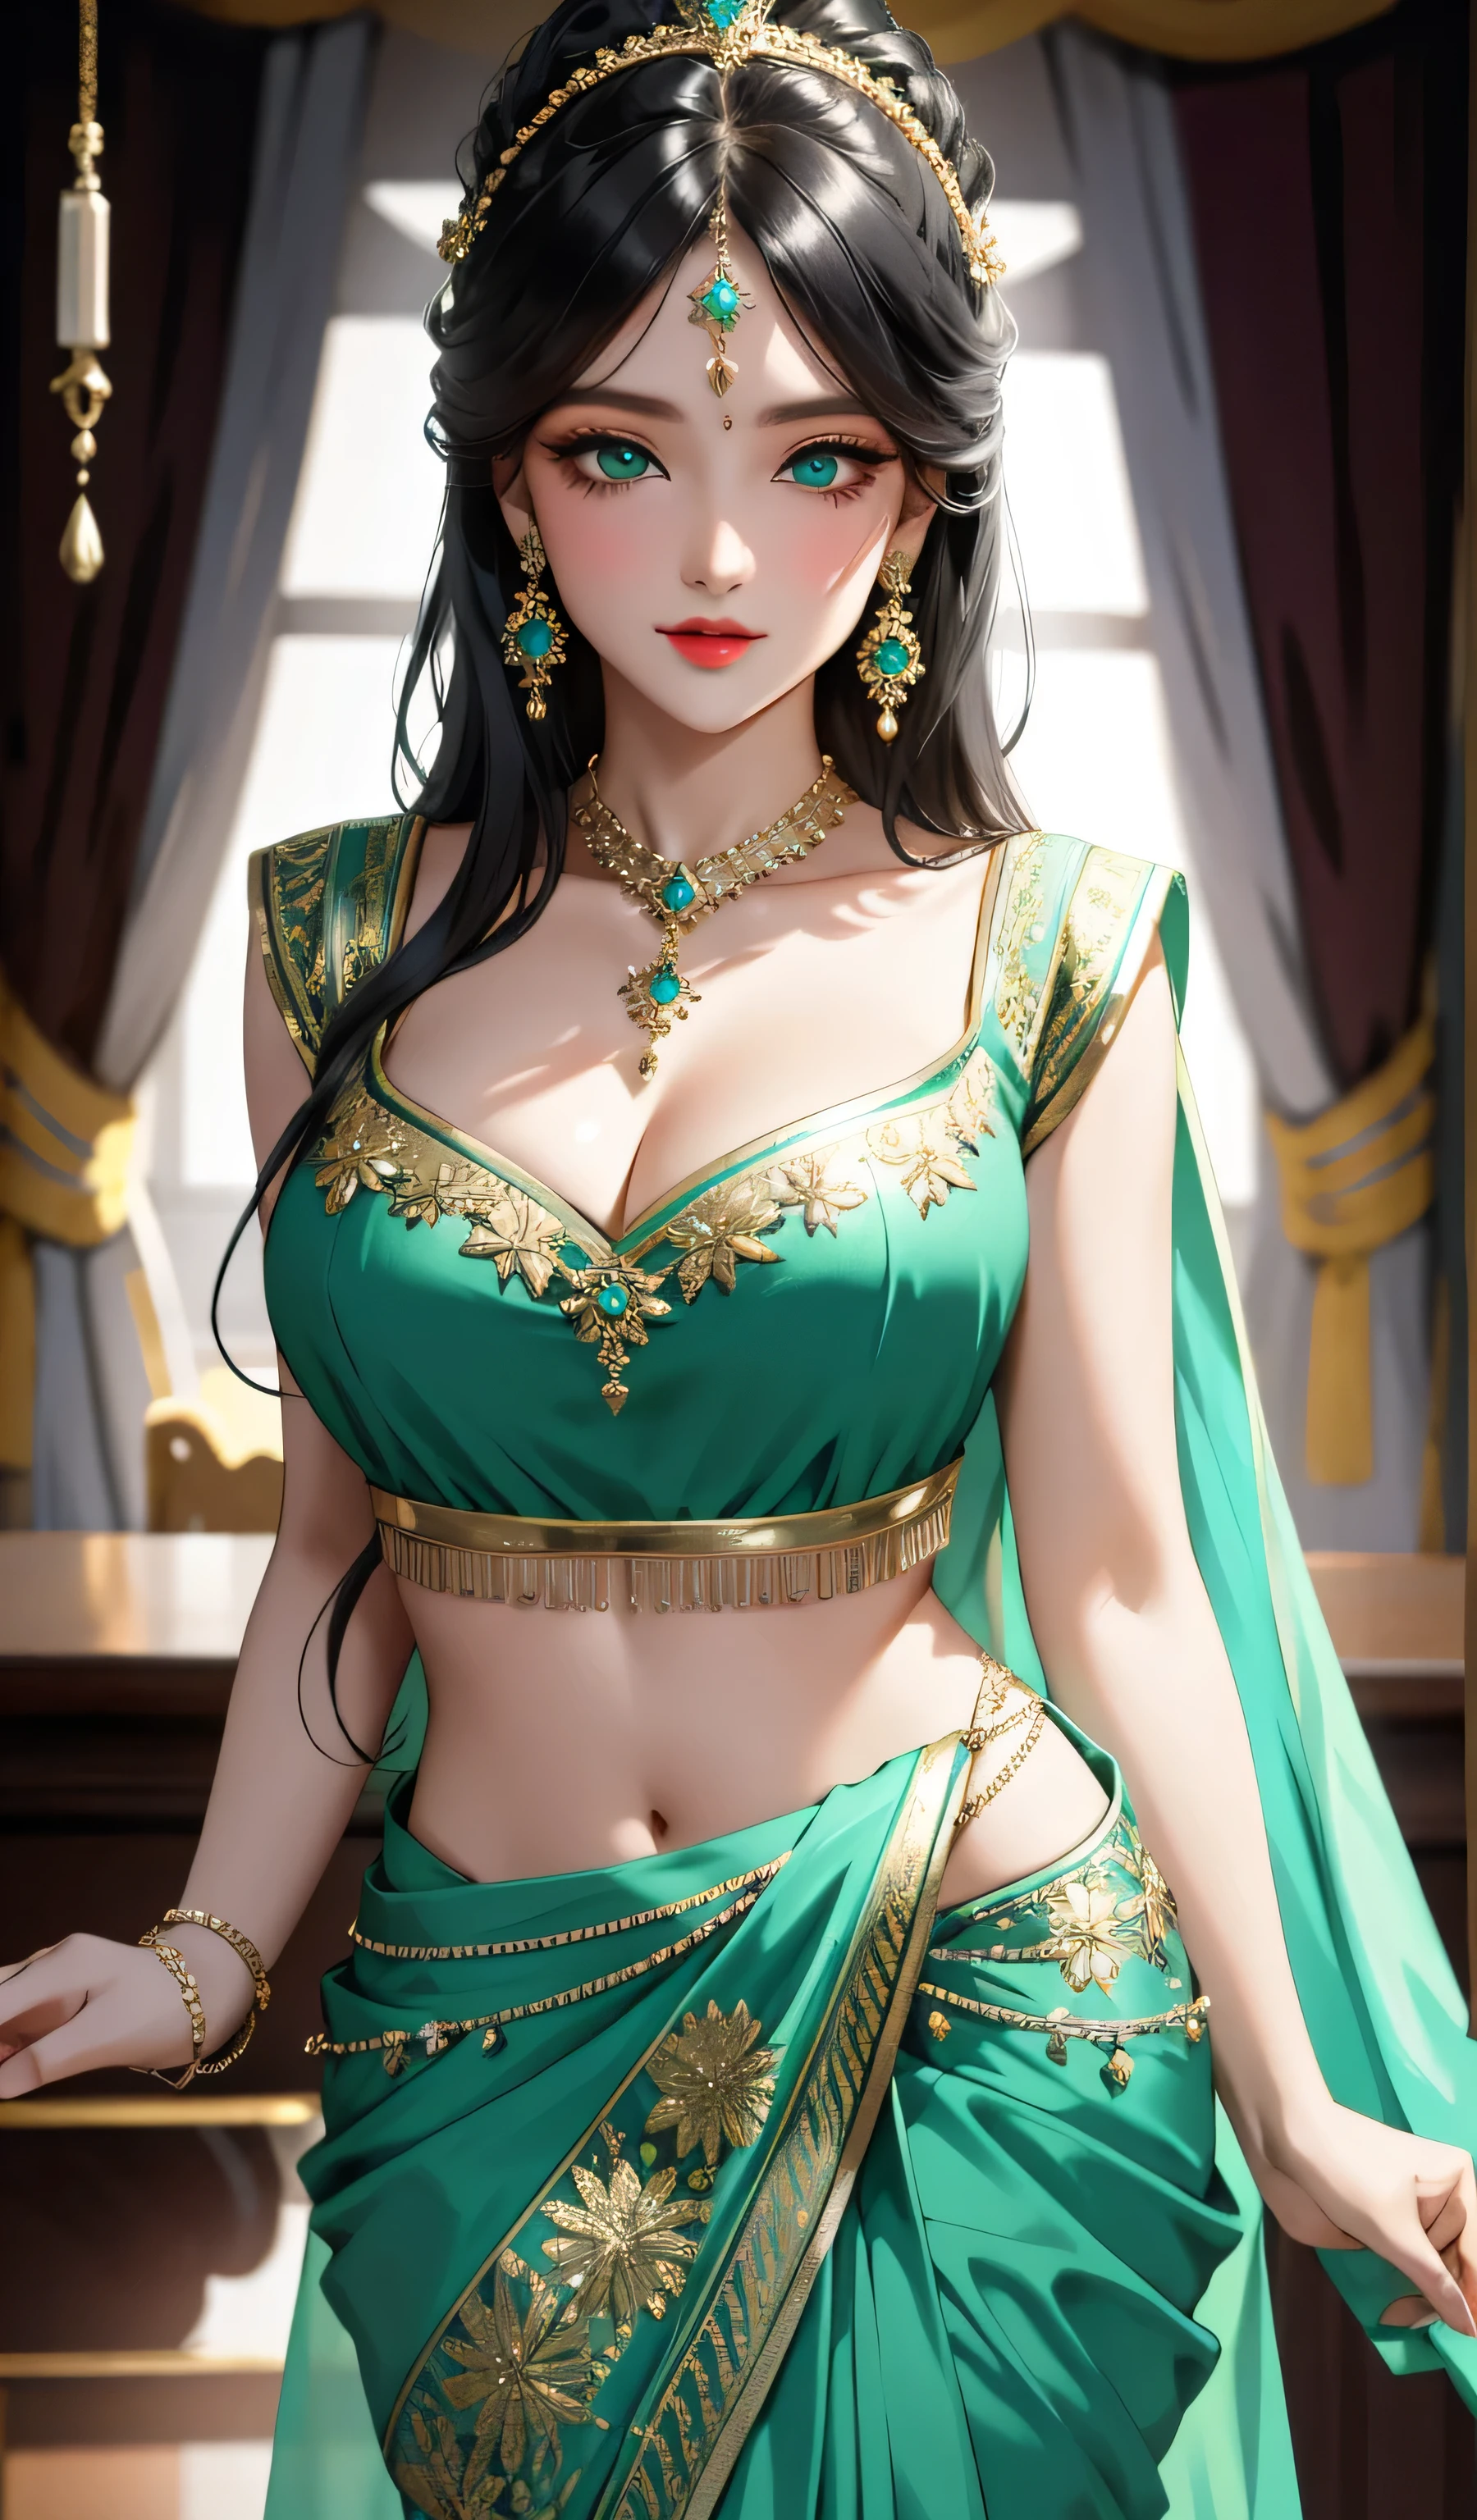 Sexy russian woman, muchas joyas, blusa de seda negra y sari verde claro, maquillaje increíble, Hermoso rostro, ojos amables, danza intrincada, mirada y baile tradicional